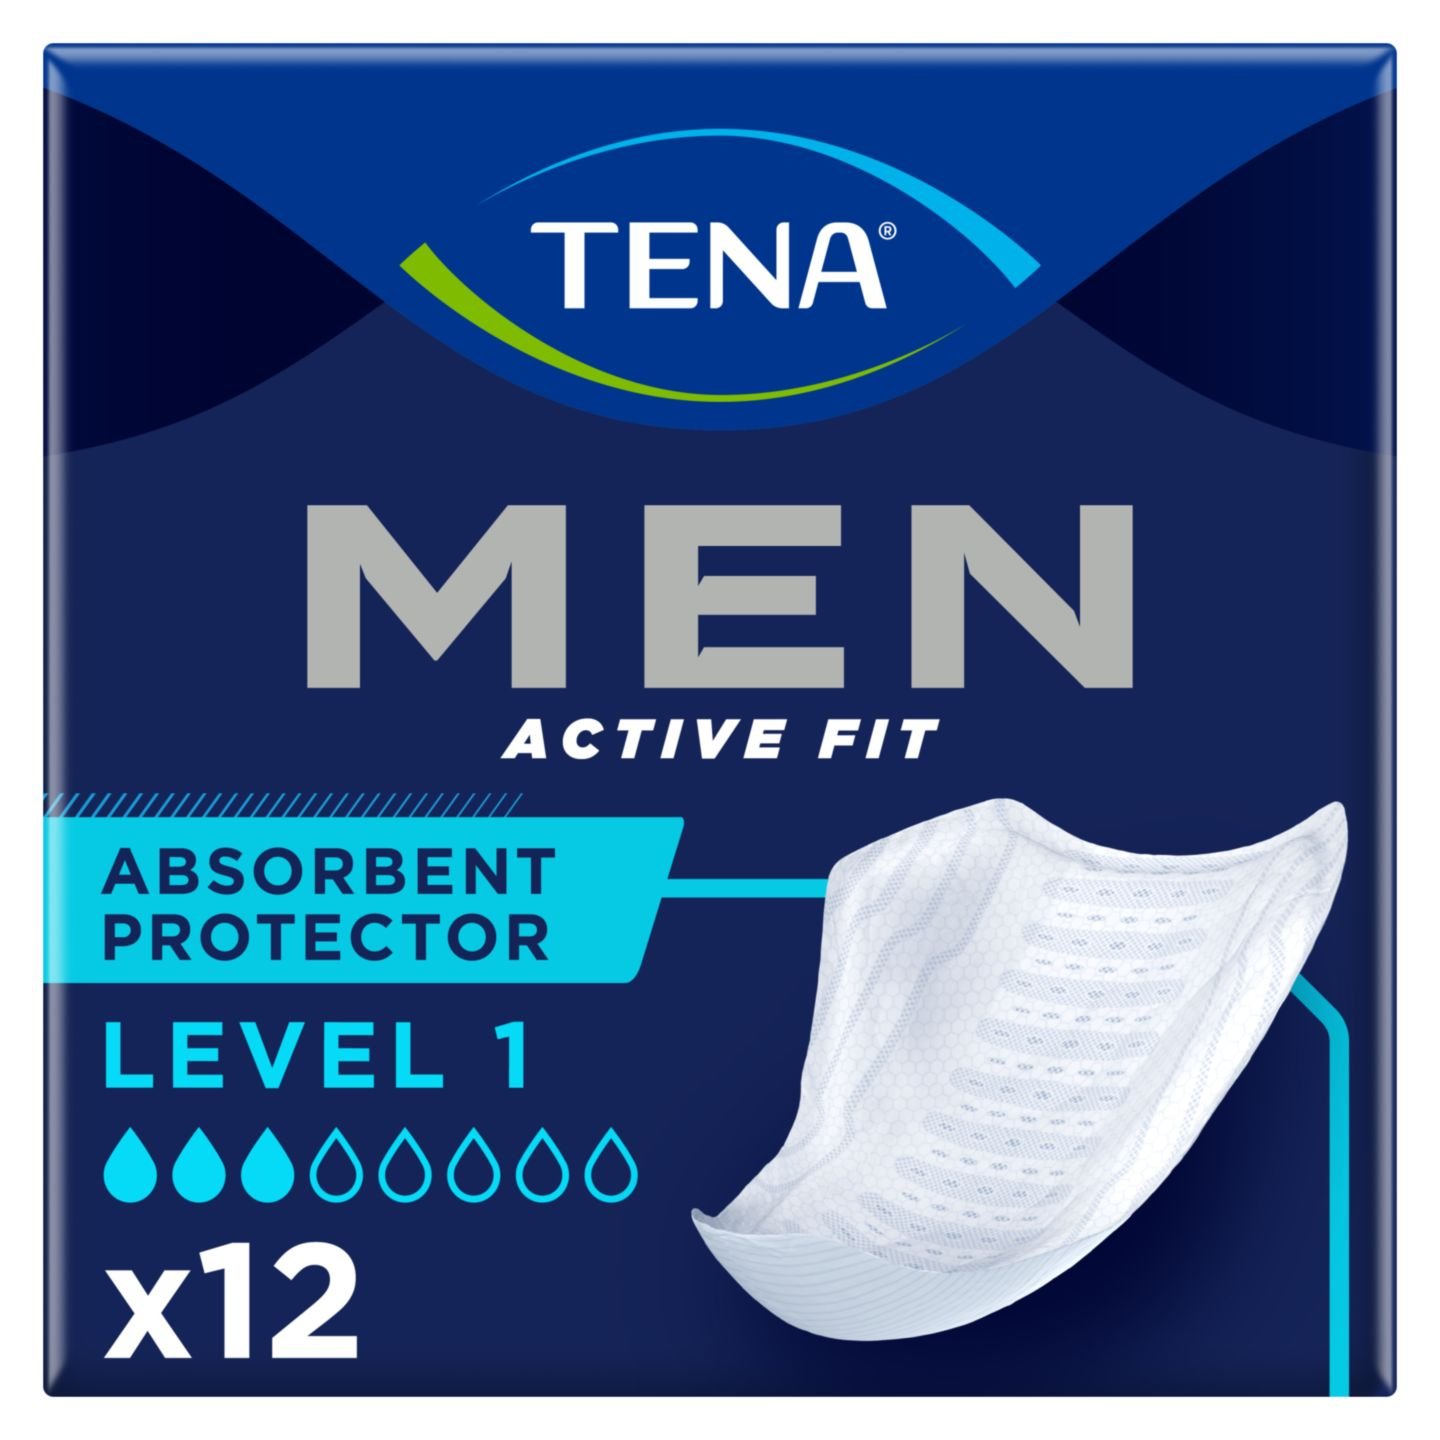 Урологічні прокладки для чоловіків Tena Men Level Active Fit L 1, 12 шт. (750661) - фото 1